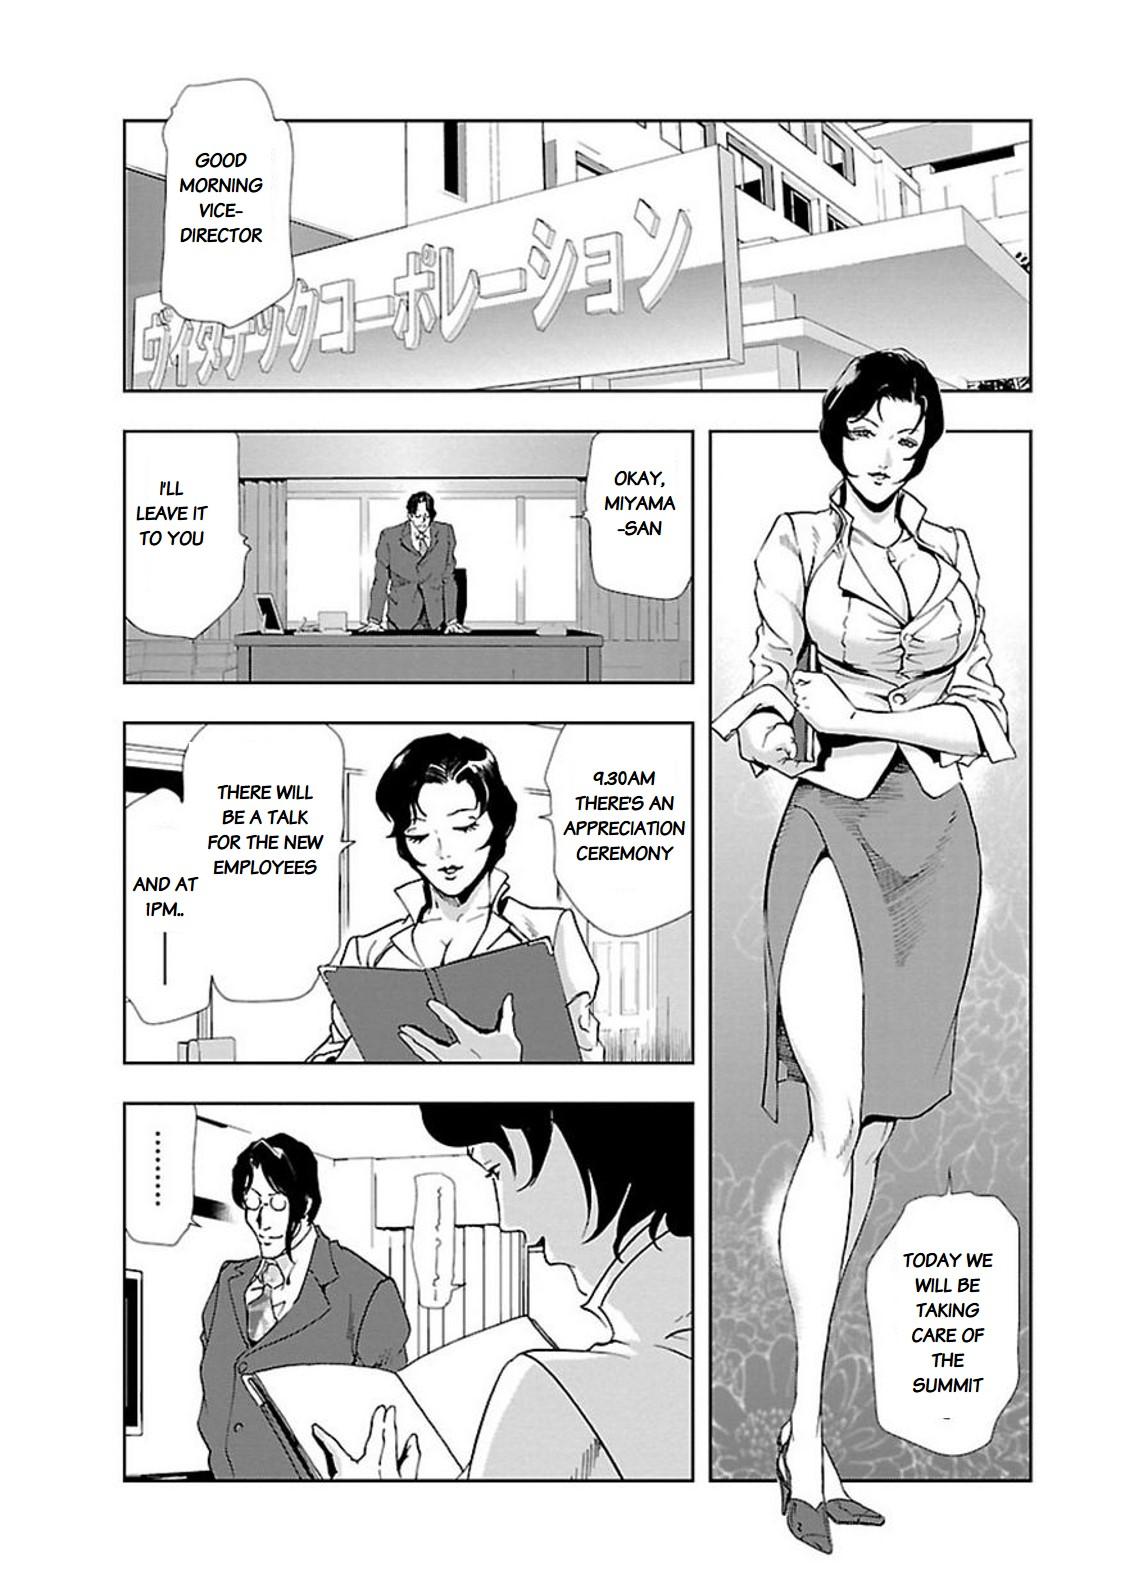 Nikuhisyo Yukiko chapter 9 1